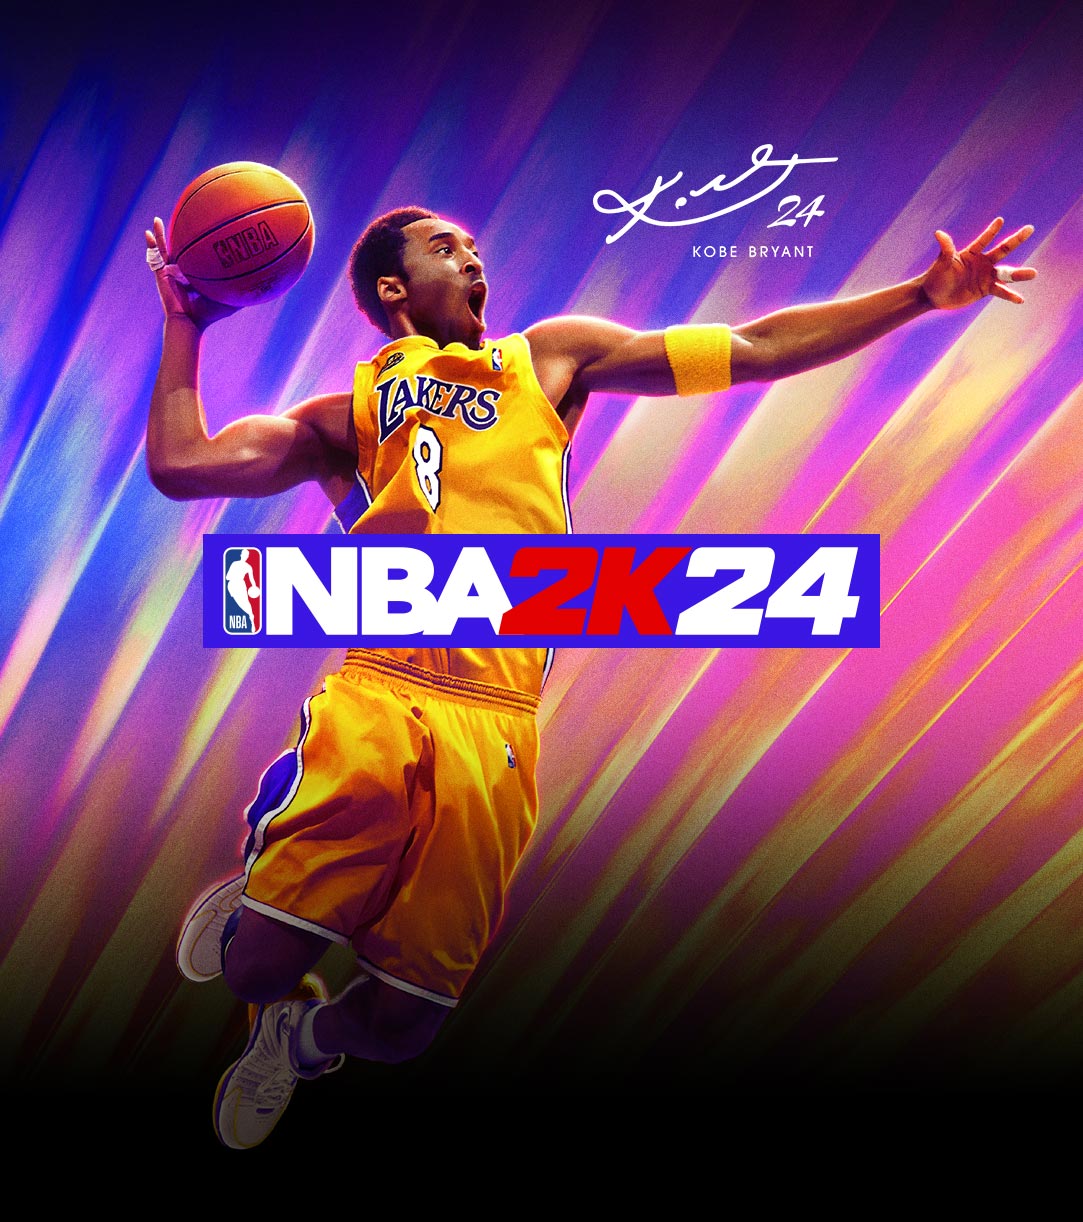 Kobe Bryant con una camiseta de los Lakers saltando de emoción para encestar; su firma con el número 24 incorporado aparece en la esquina inferior derecha.